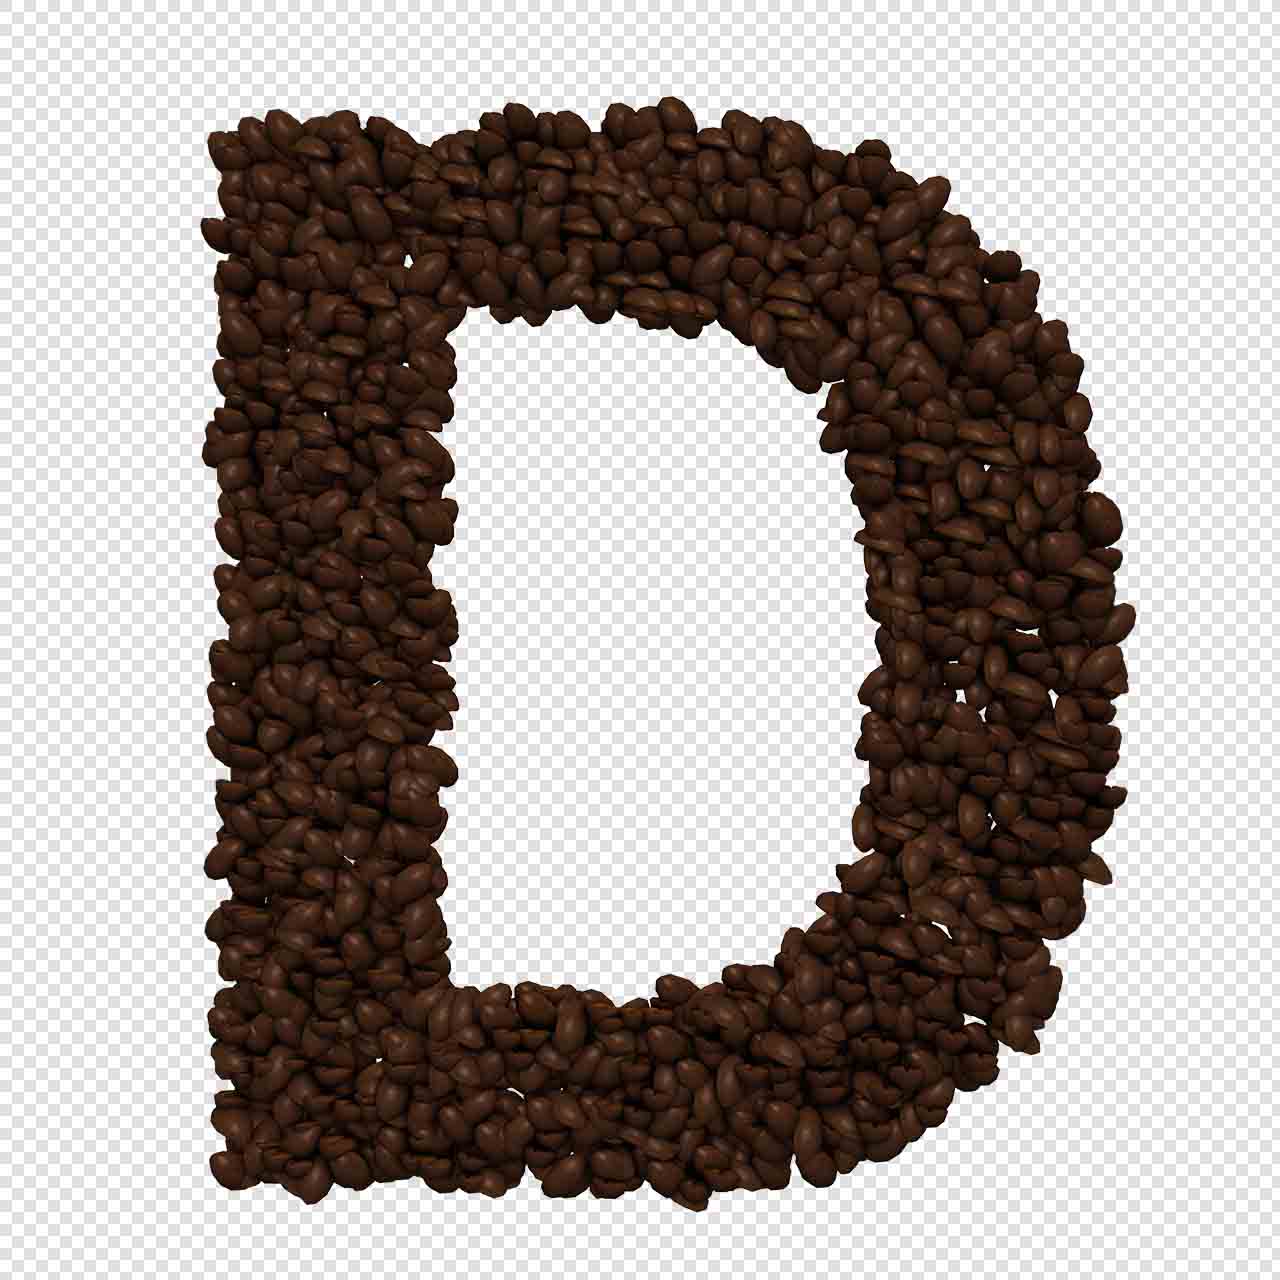 Alfabeto de granos de café letras png transparente